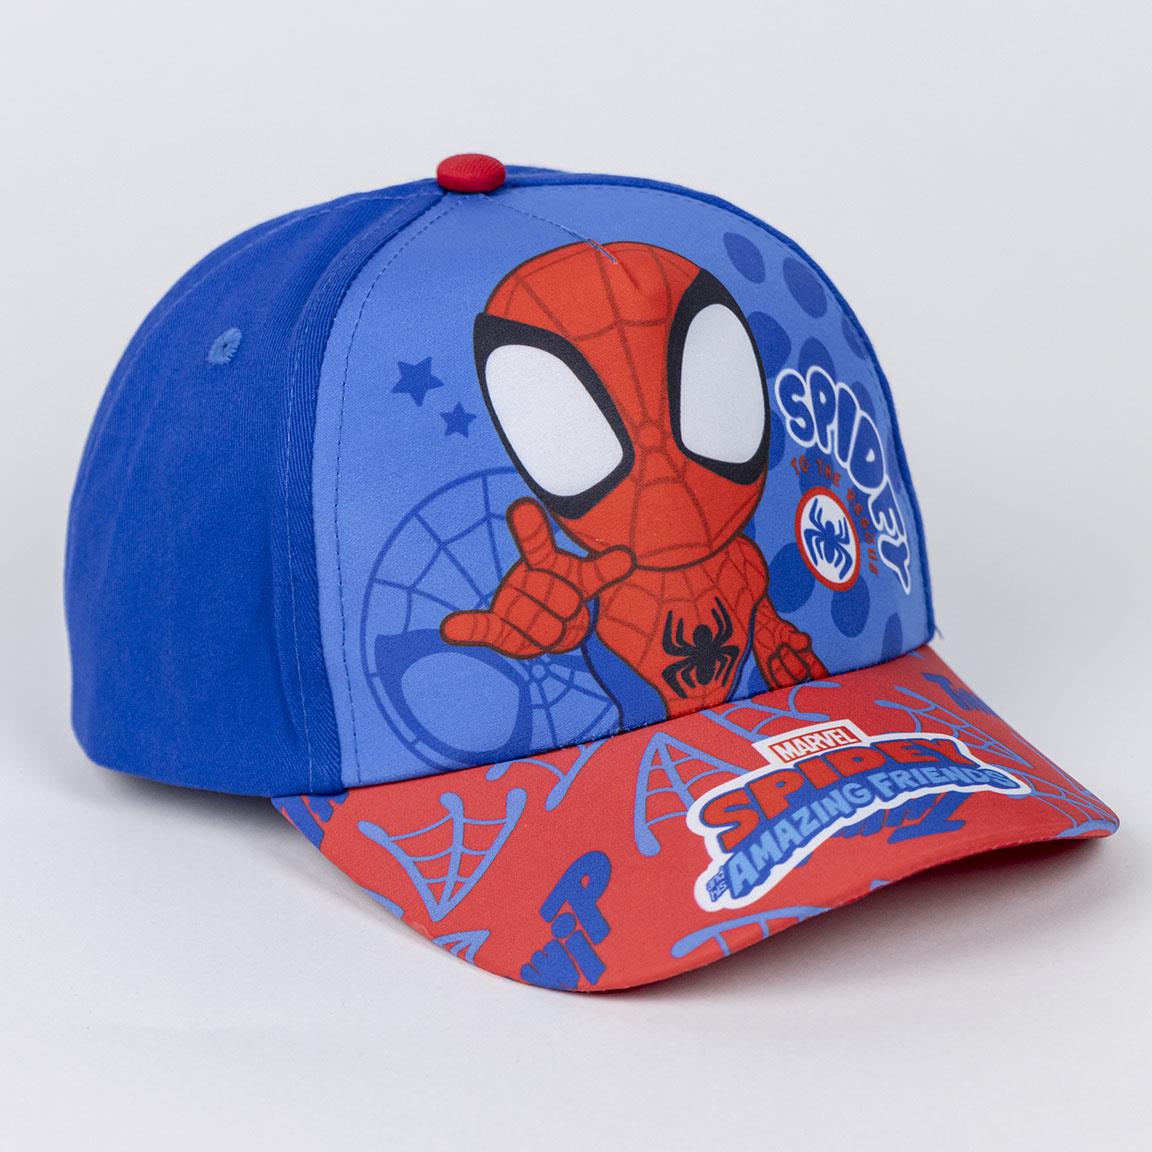 Marvel Spidey Kinder Basecap Baseball Kappe Mütze plus Sonnenbrille Gr. 51